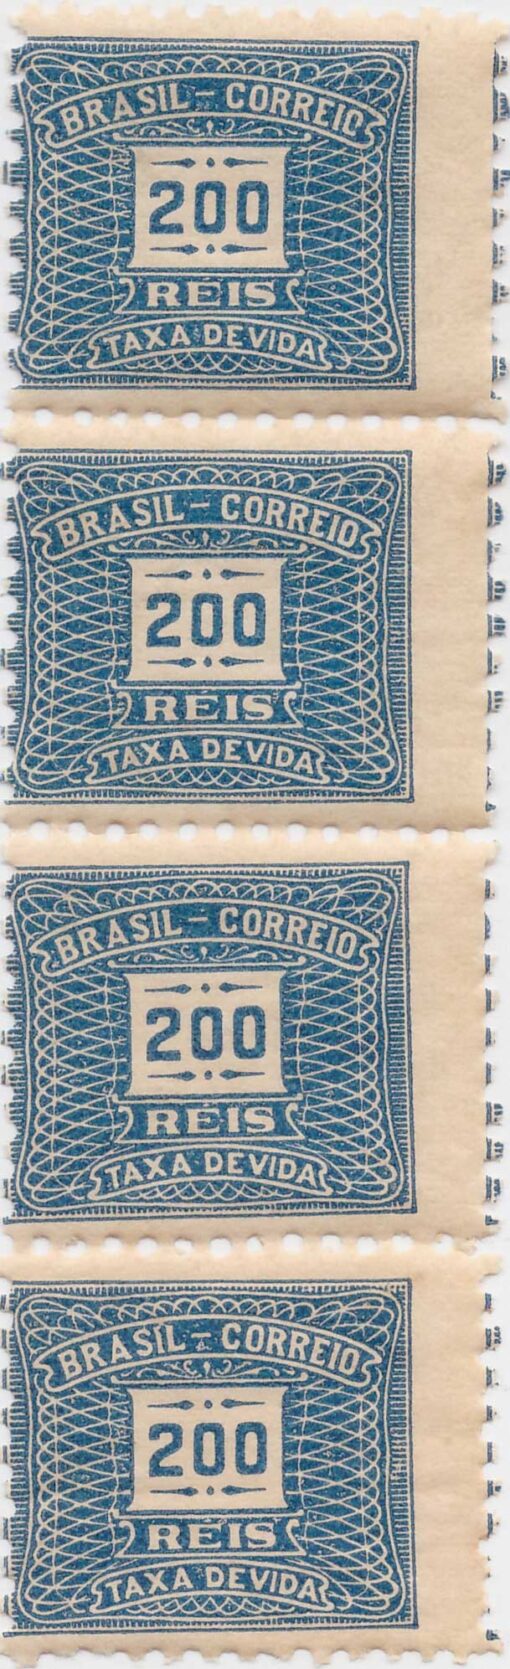 T-45 Taxa Devida (Tira com 4 selos) 200 Reis - (15/04/1919) -0